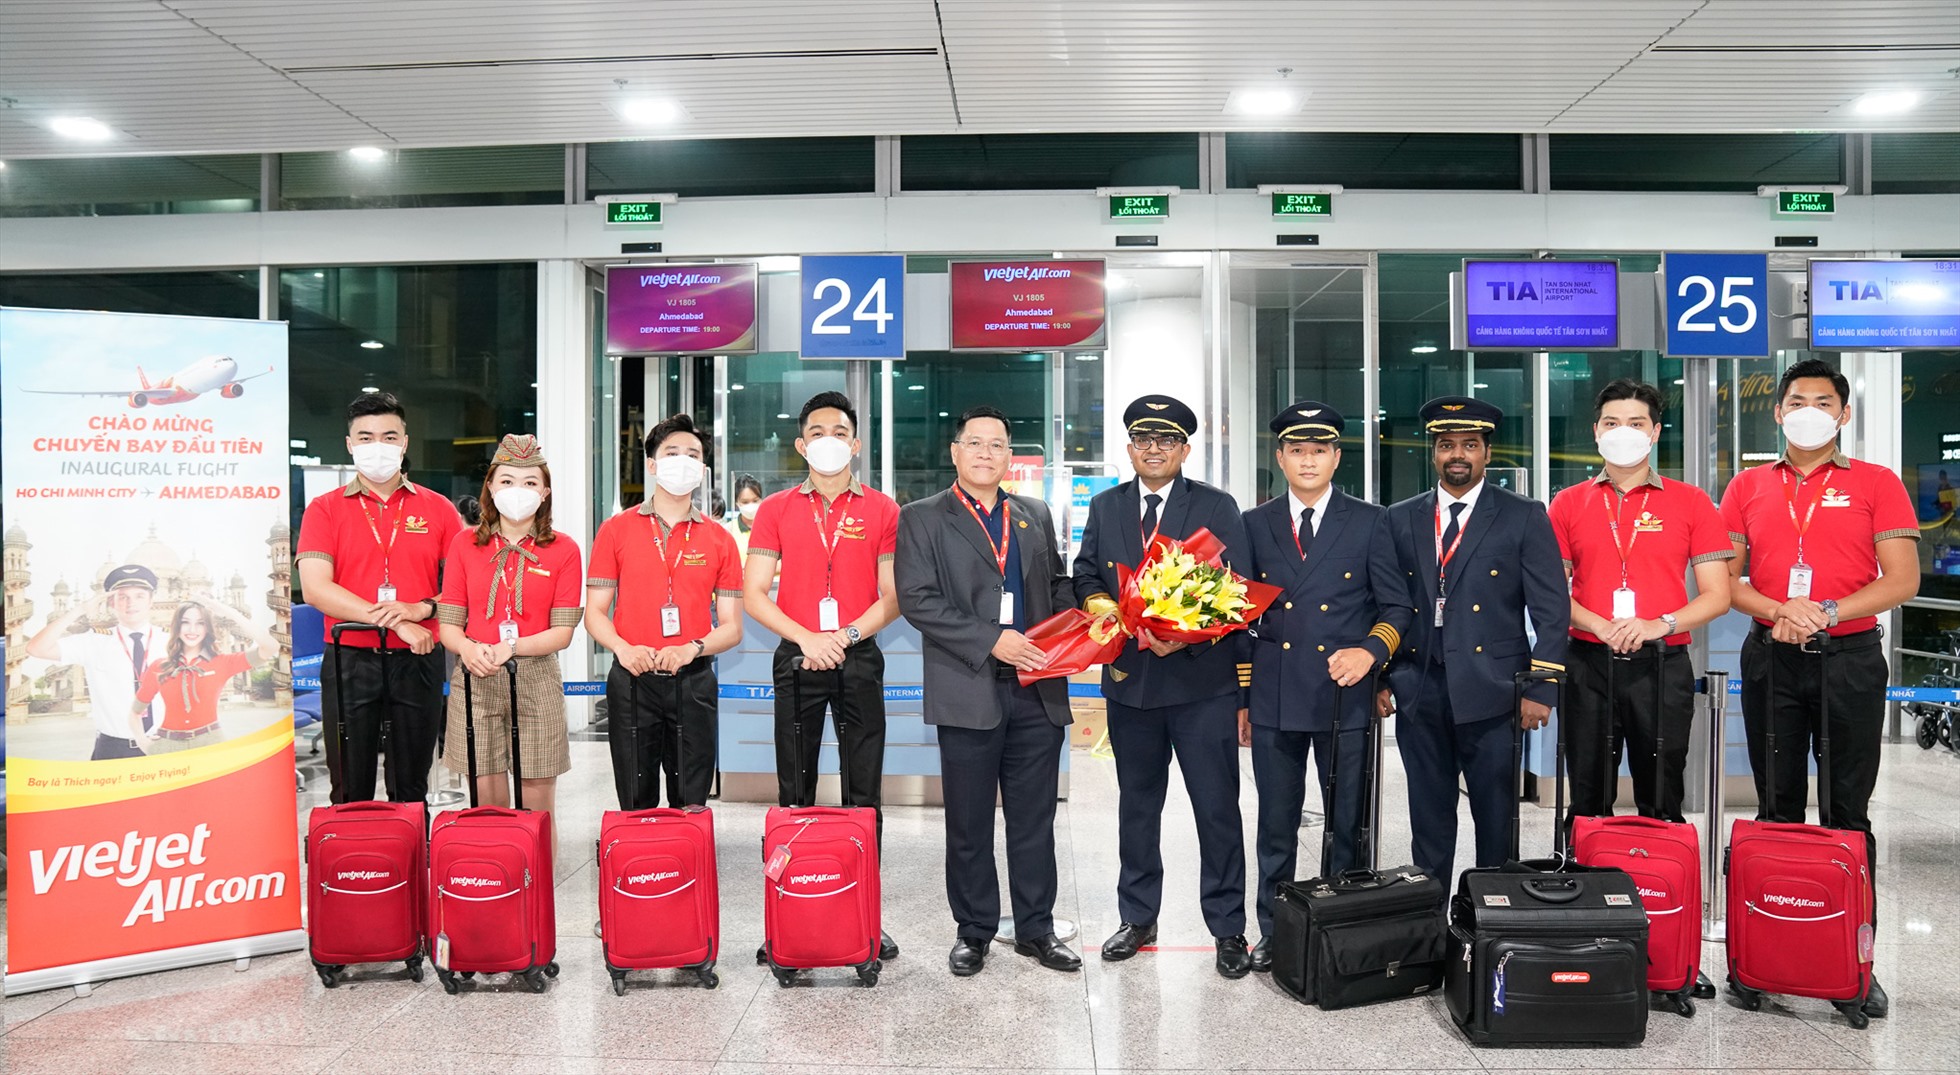 Phi hành đoàn Vietjet thực hiện chuyến bay đầu tiên từ Việt Nam đến với thành phố Ahmedabad.